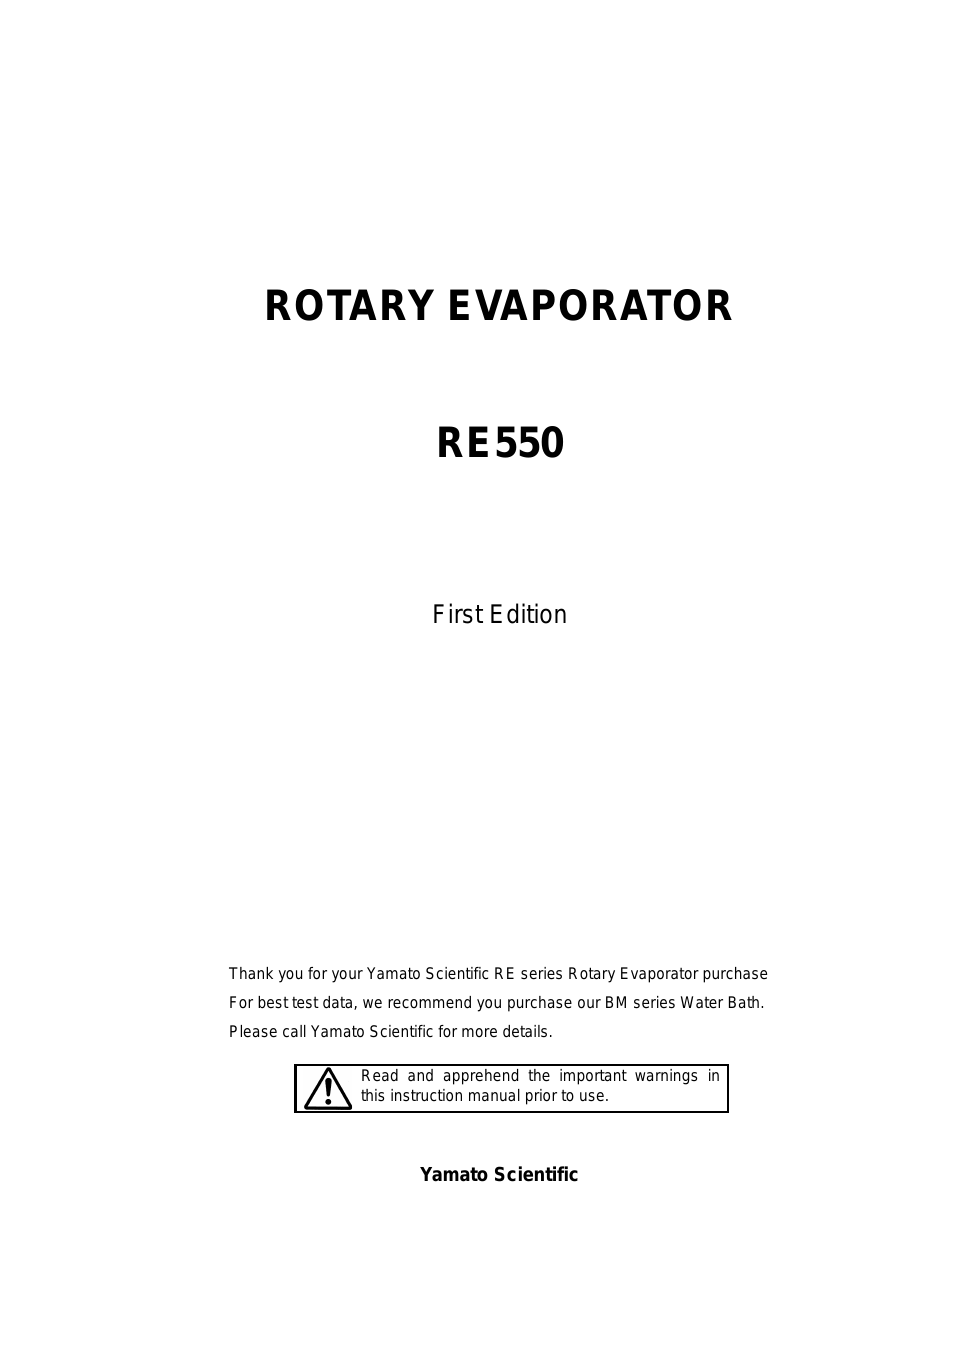 RE550 Evaporators, Rotary